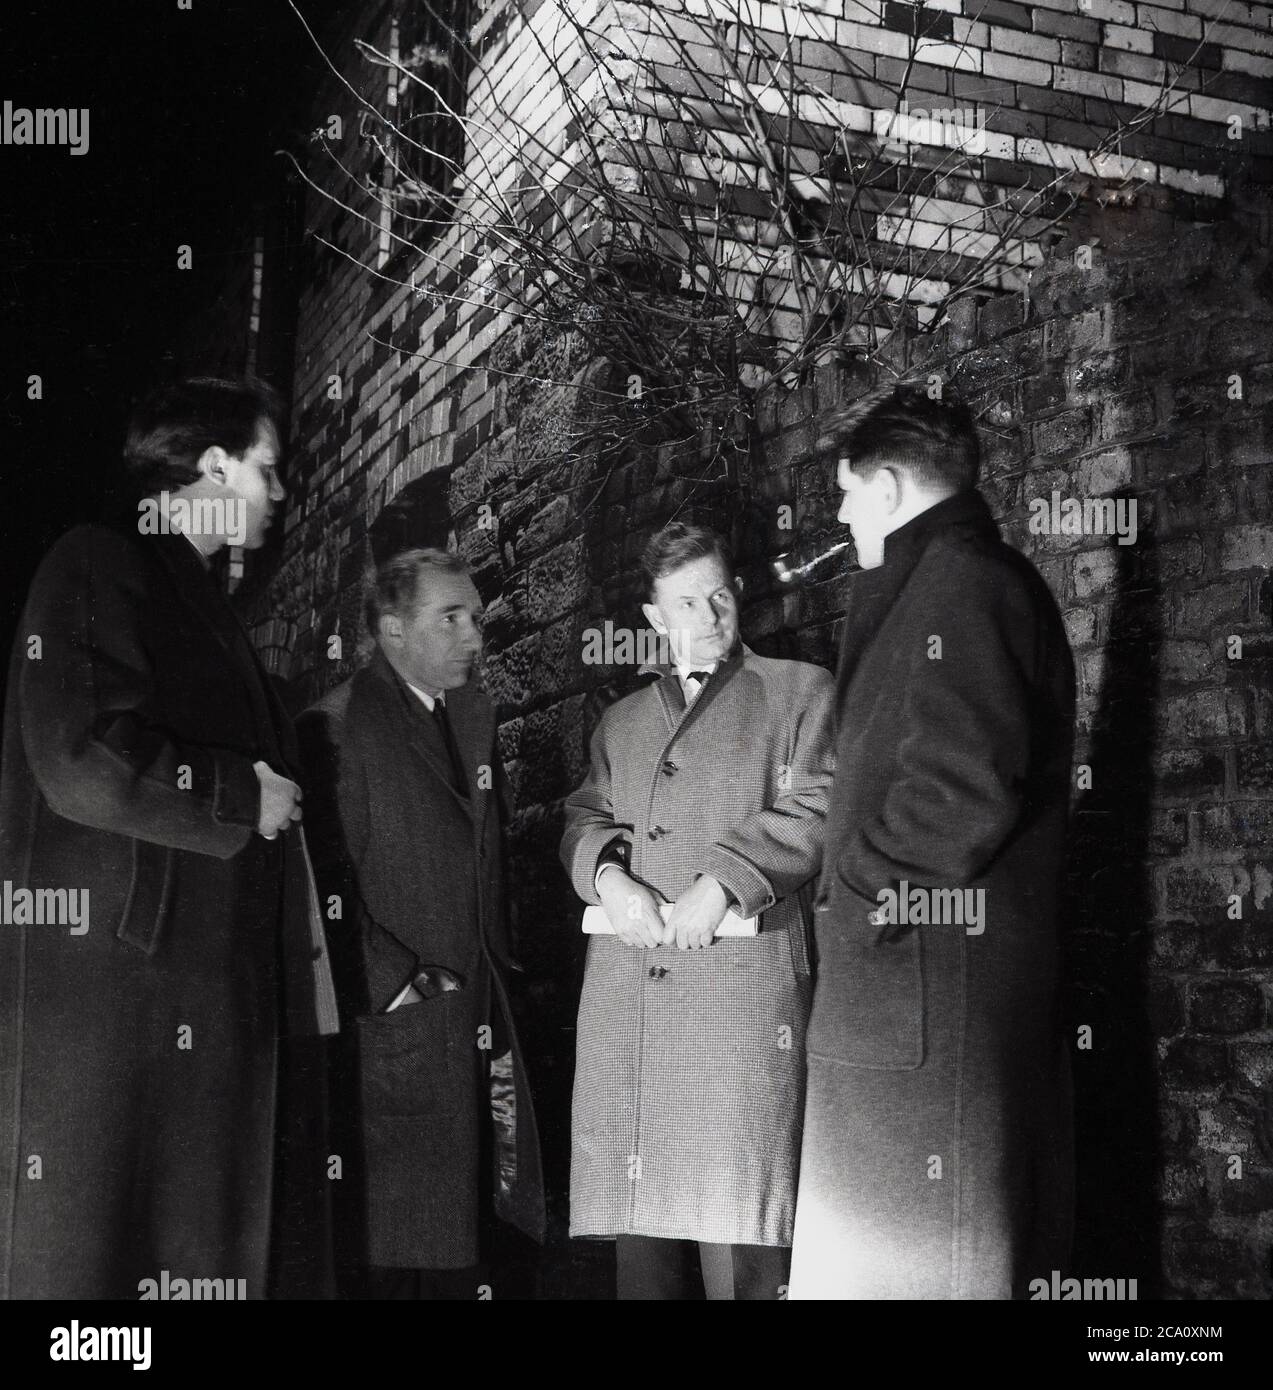 1960, storico, eveningtime e quattro uomini che indossano soprabiti e uno fumare un tubo in piedi in un vicolo che ha un segreto o riunione di clandetine, in modo da non essere sopravuocato o visto da nessuno, Londra, Inghilterra, Regno Unito. Foto Stock